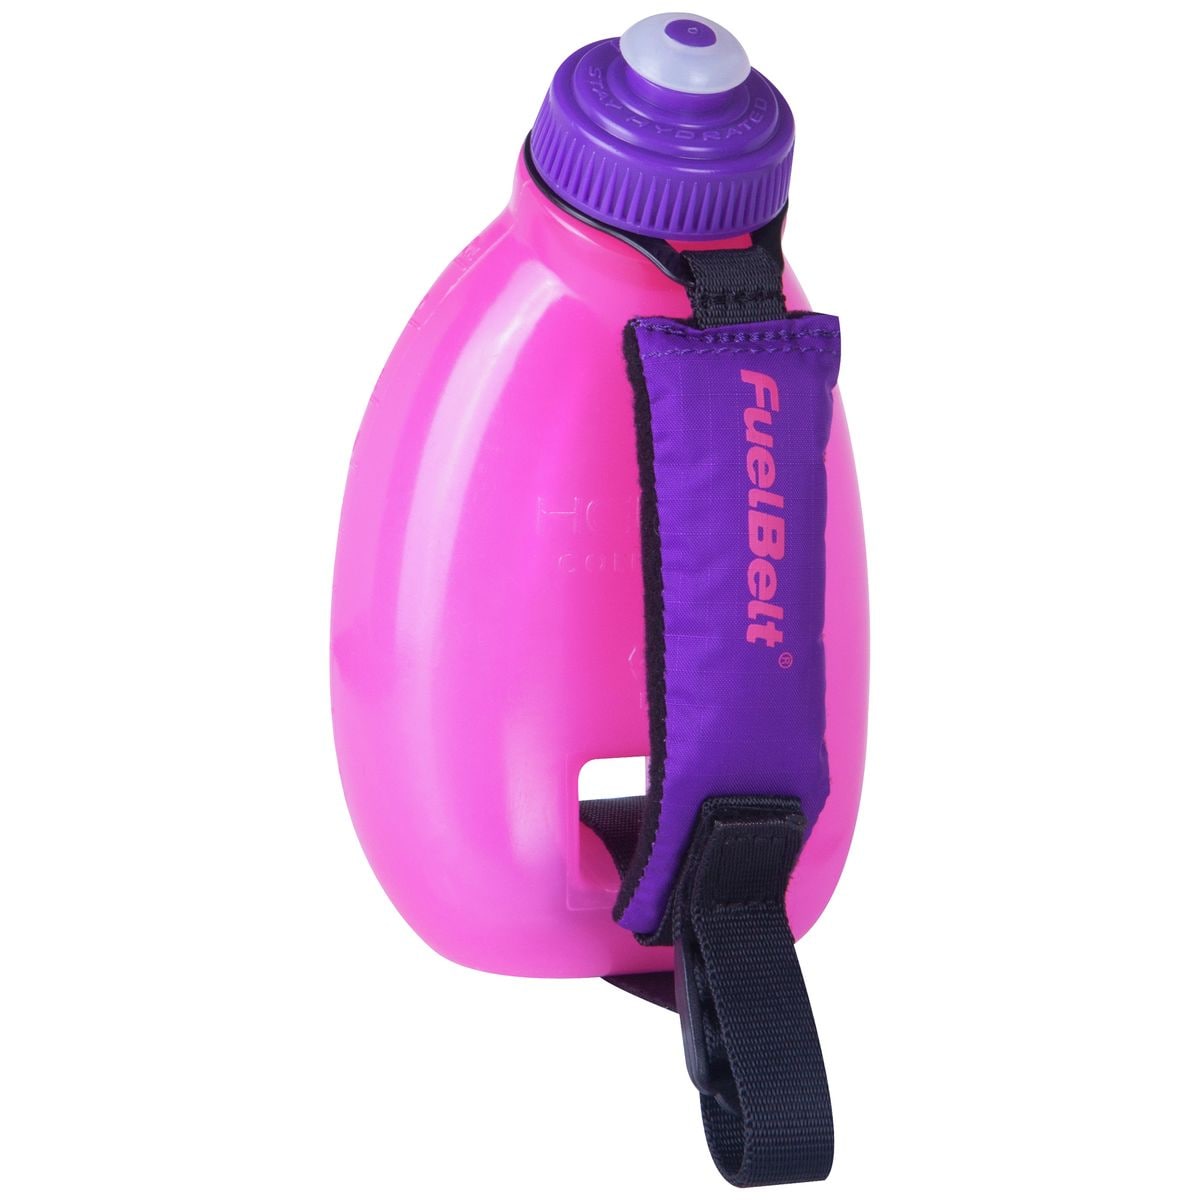 Fuel Belt Helium Sprint Palm Holder Water Bottle 10oz